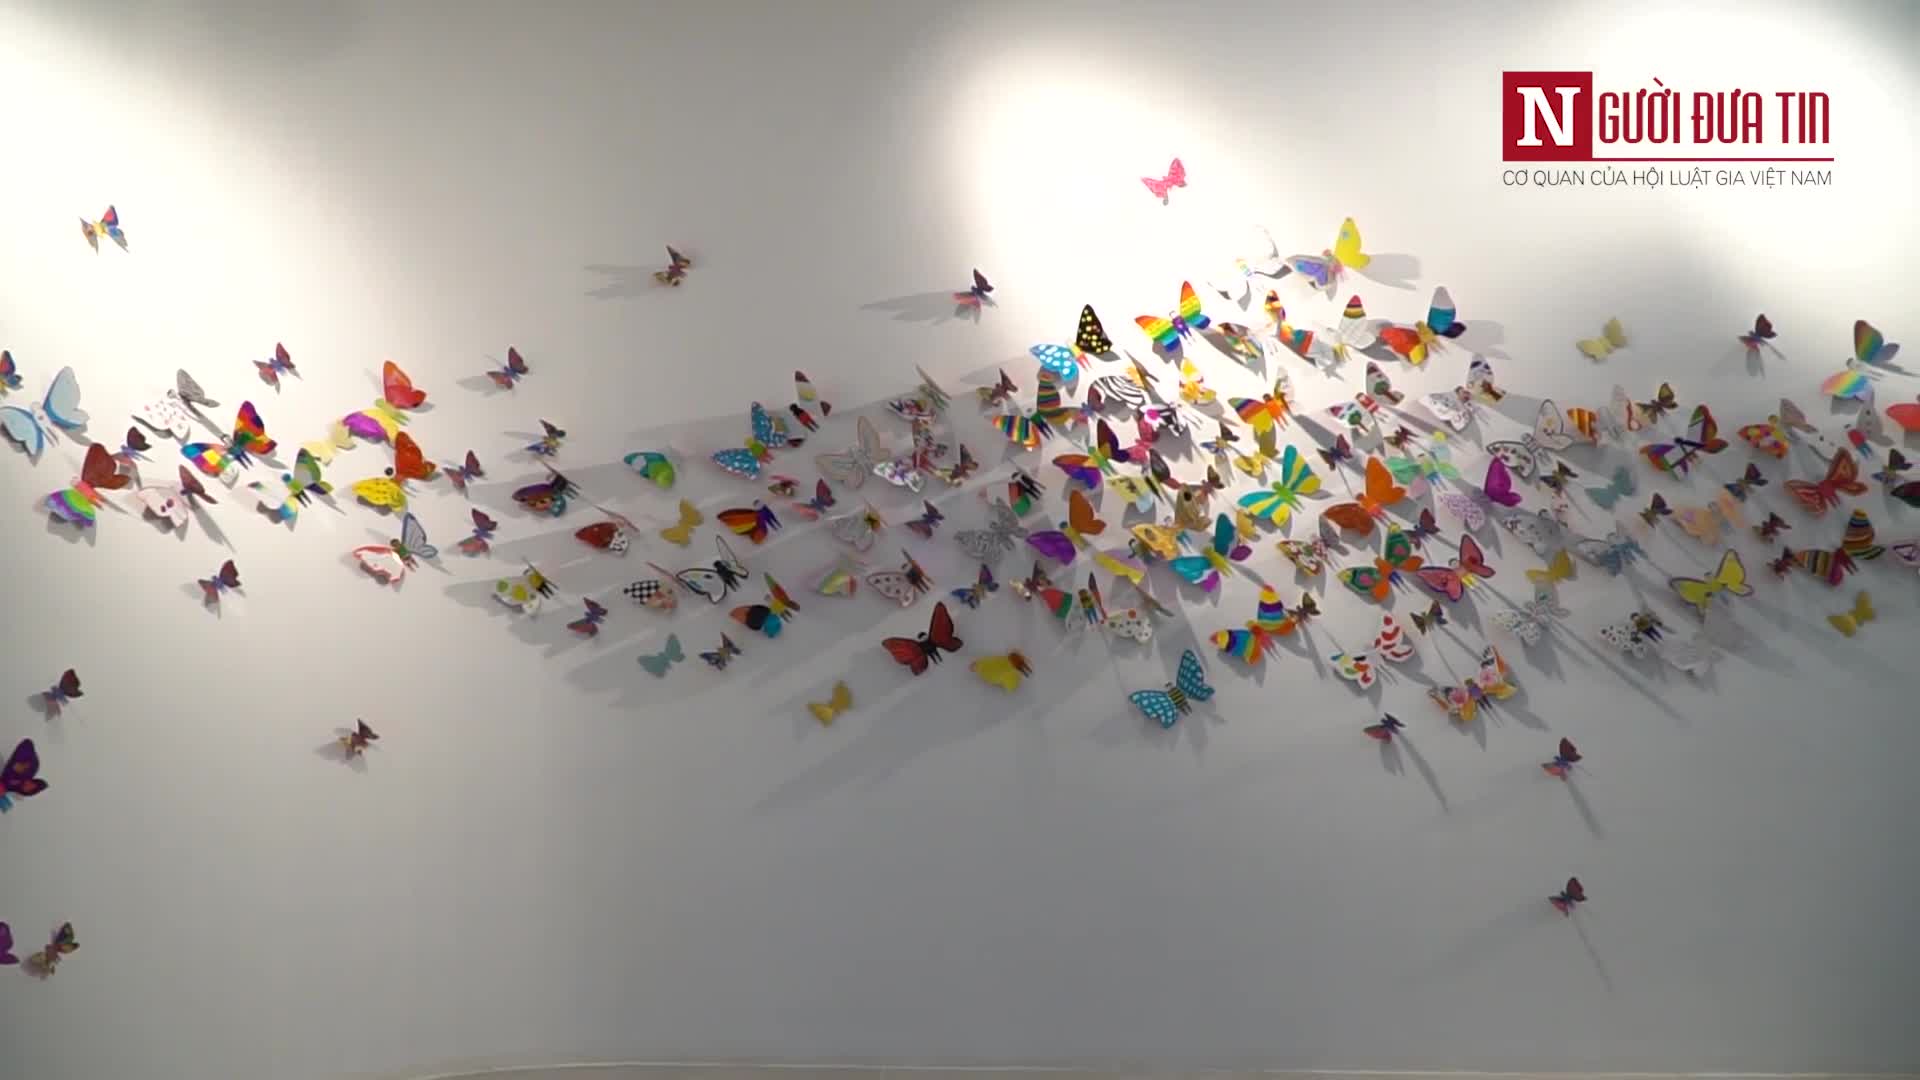  “Hóa thành bươm bướm” – Nơi hội tụ hàng nghìn cánh bướm ước mơ của trẻ em trên toàn thế giới